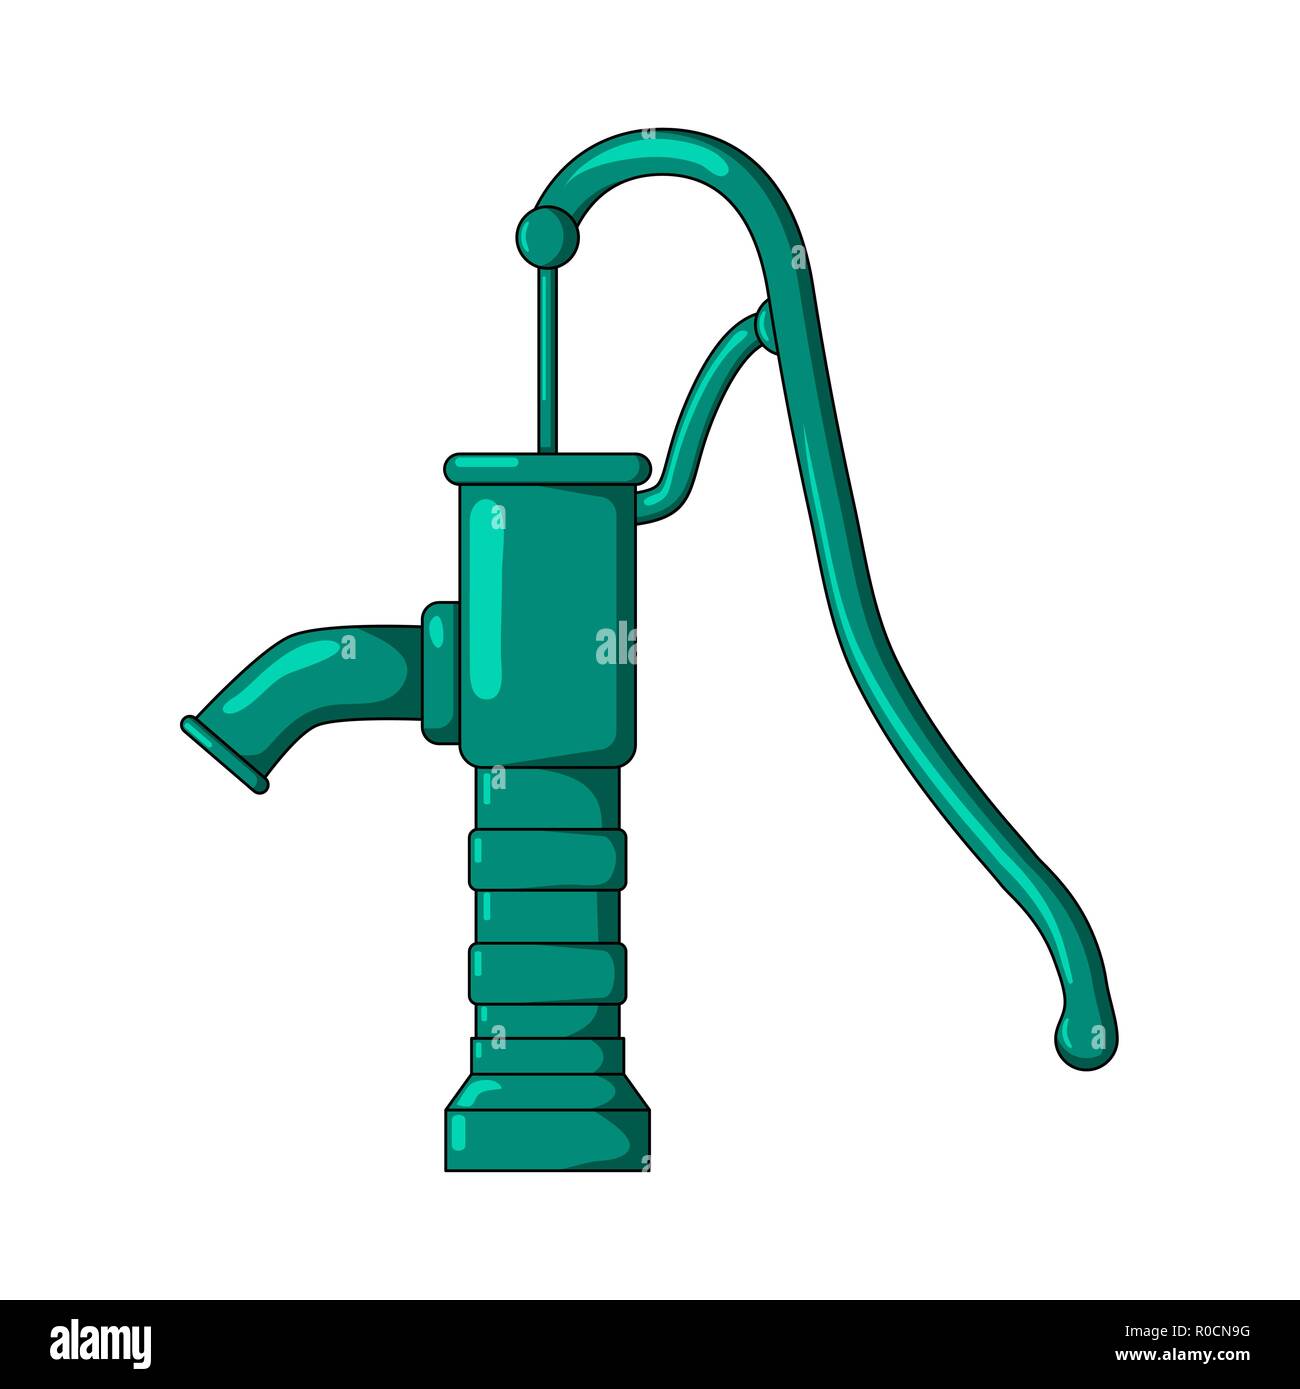 Benzinbetriebene Wasserpumpe Mit Schlauch Für Landwirtschaftliche Geräte  Stockfotografie - Alamy